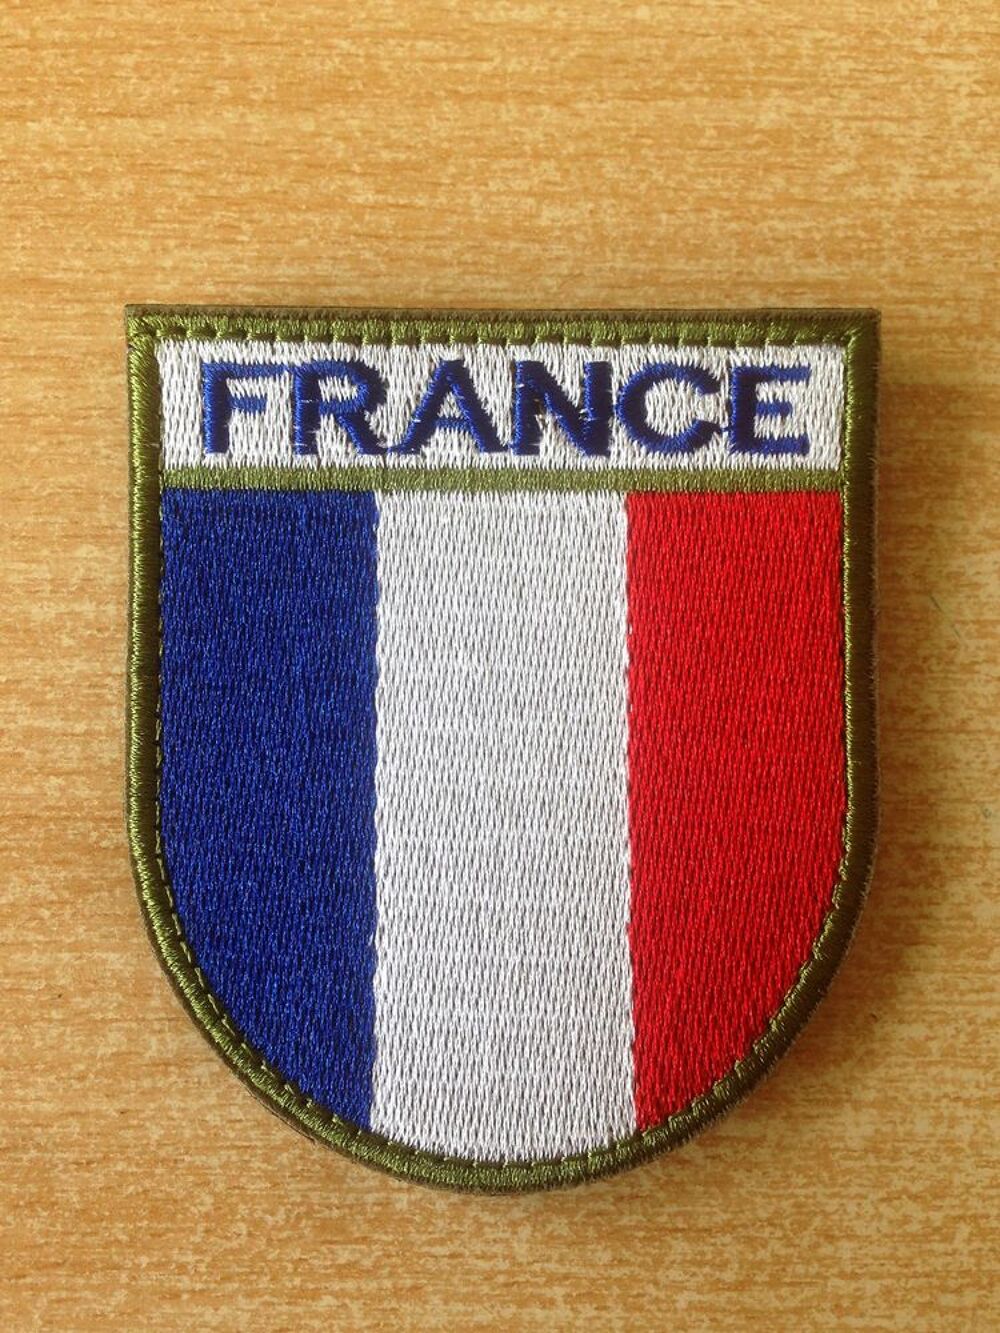 &eacute;cusson brod&eacute; drapeau francais france 7,5x6,5 cm 